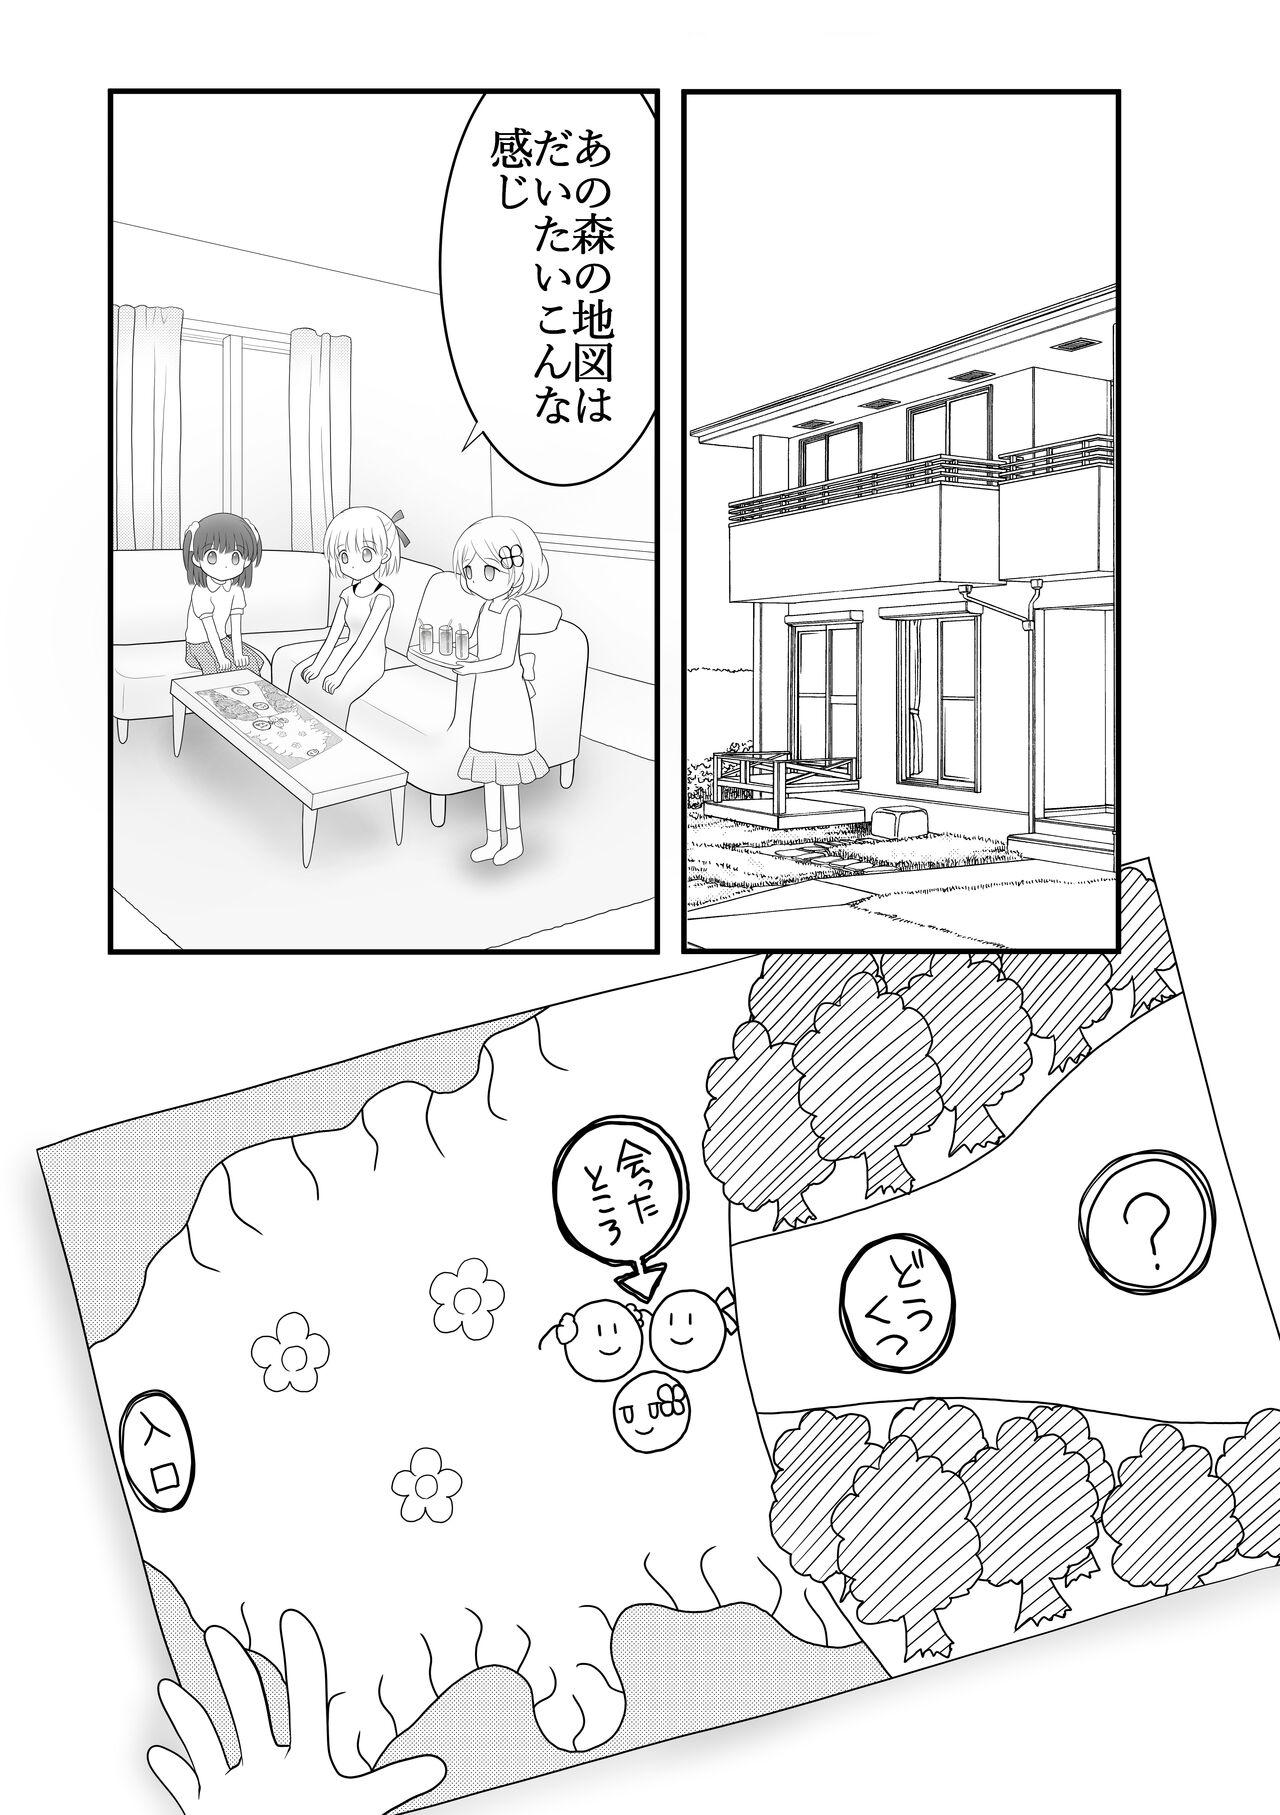 Stepsister Maigo no Mori no Kusuguribana 5 - Original Blackcock - Page 2